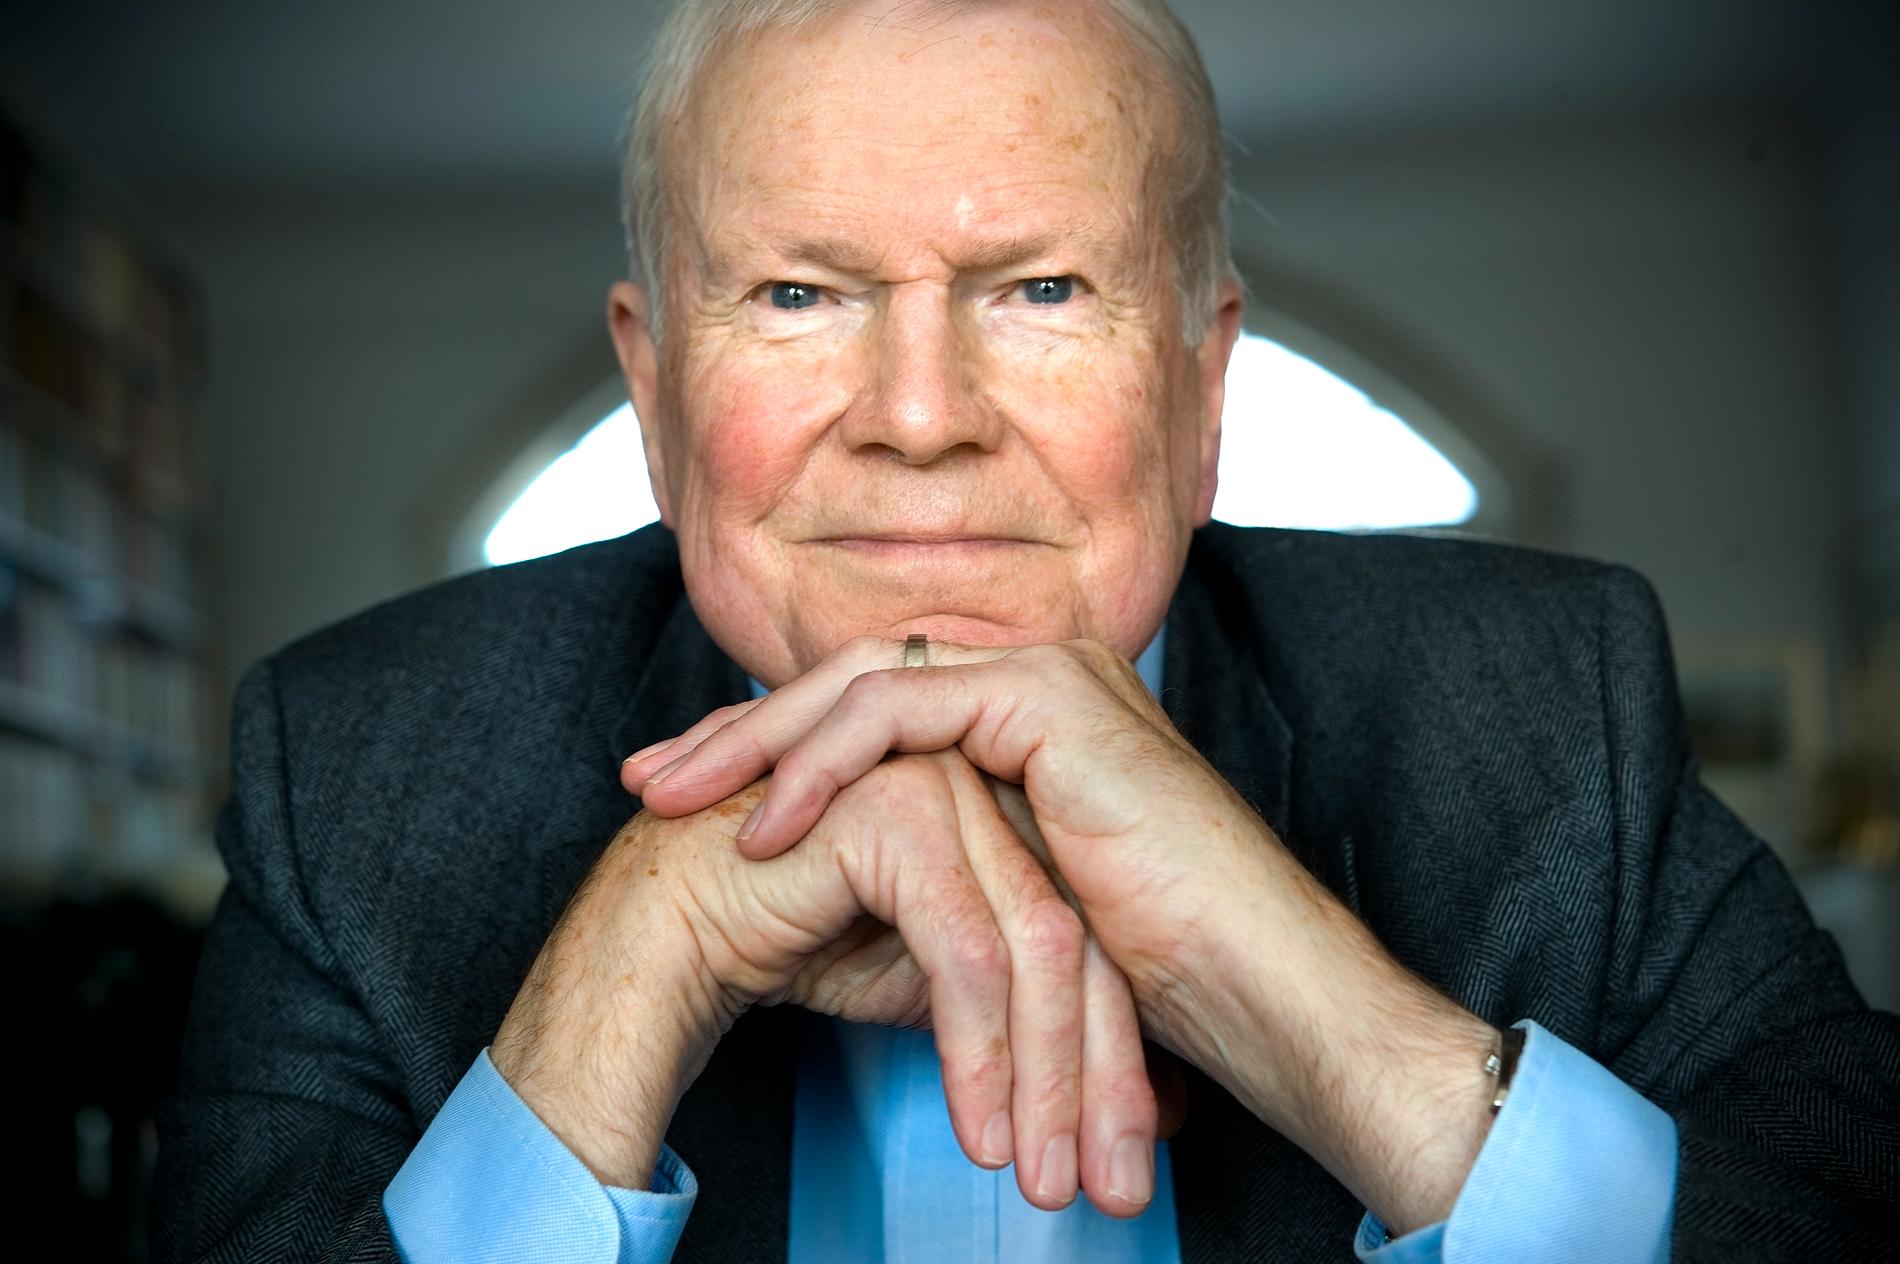 Författaren och akademiledamoten Kjell Espmark har avlidit. Han blev 92 år.